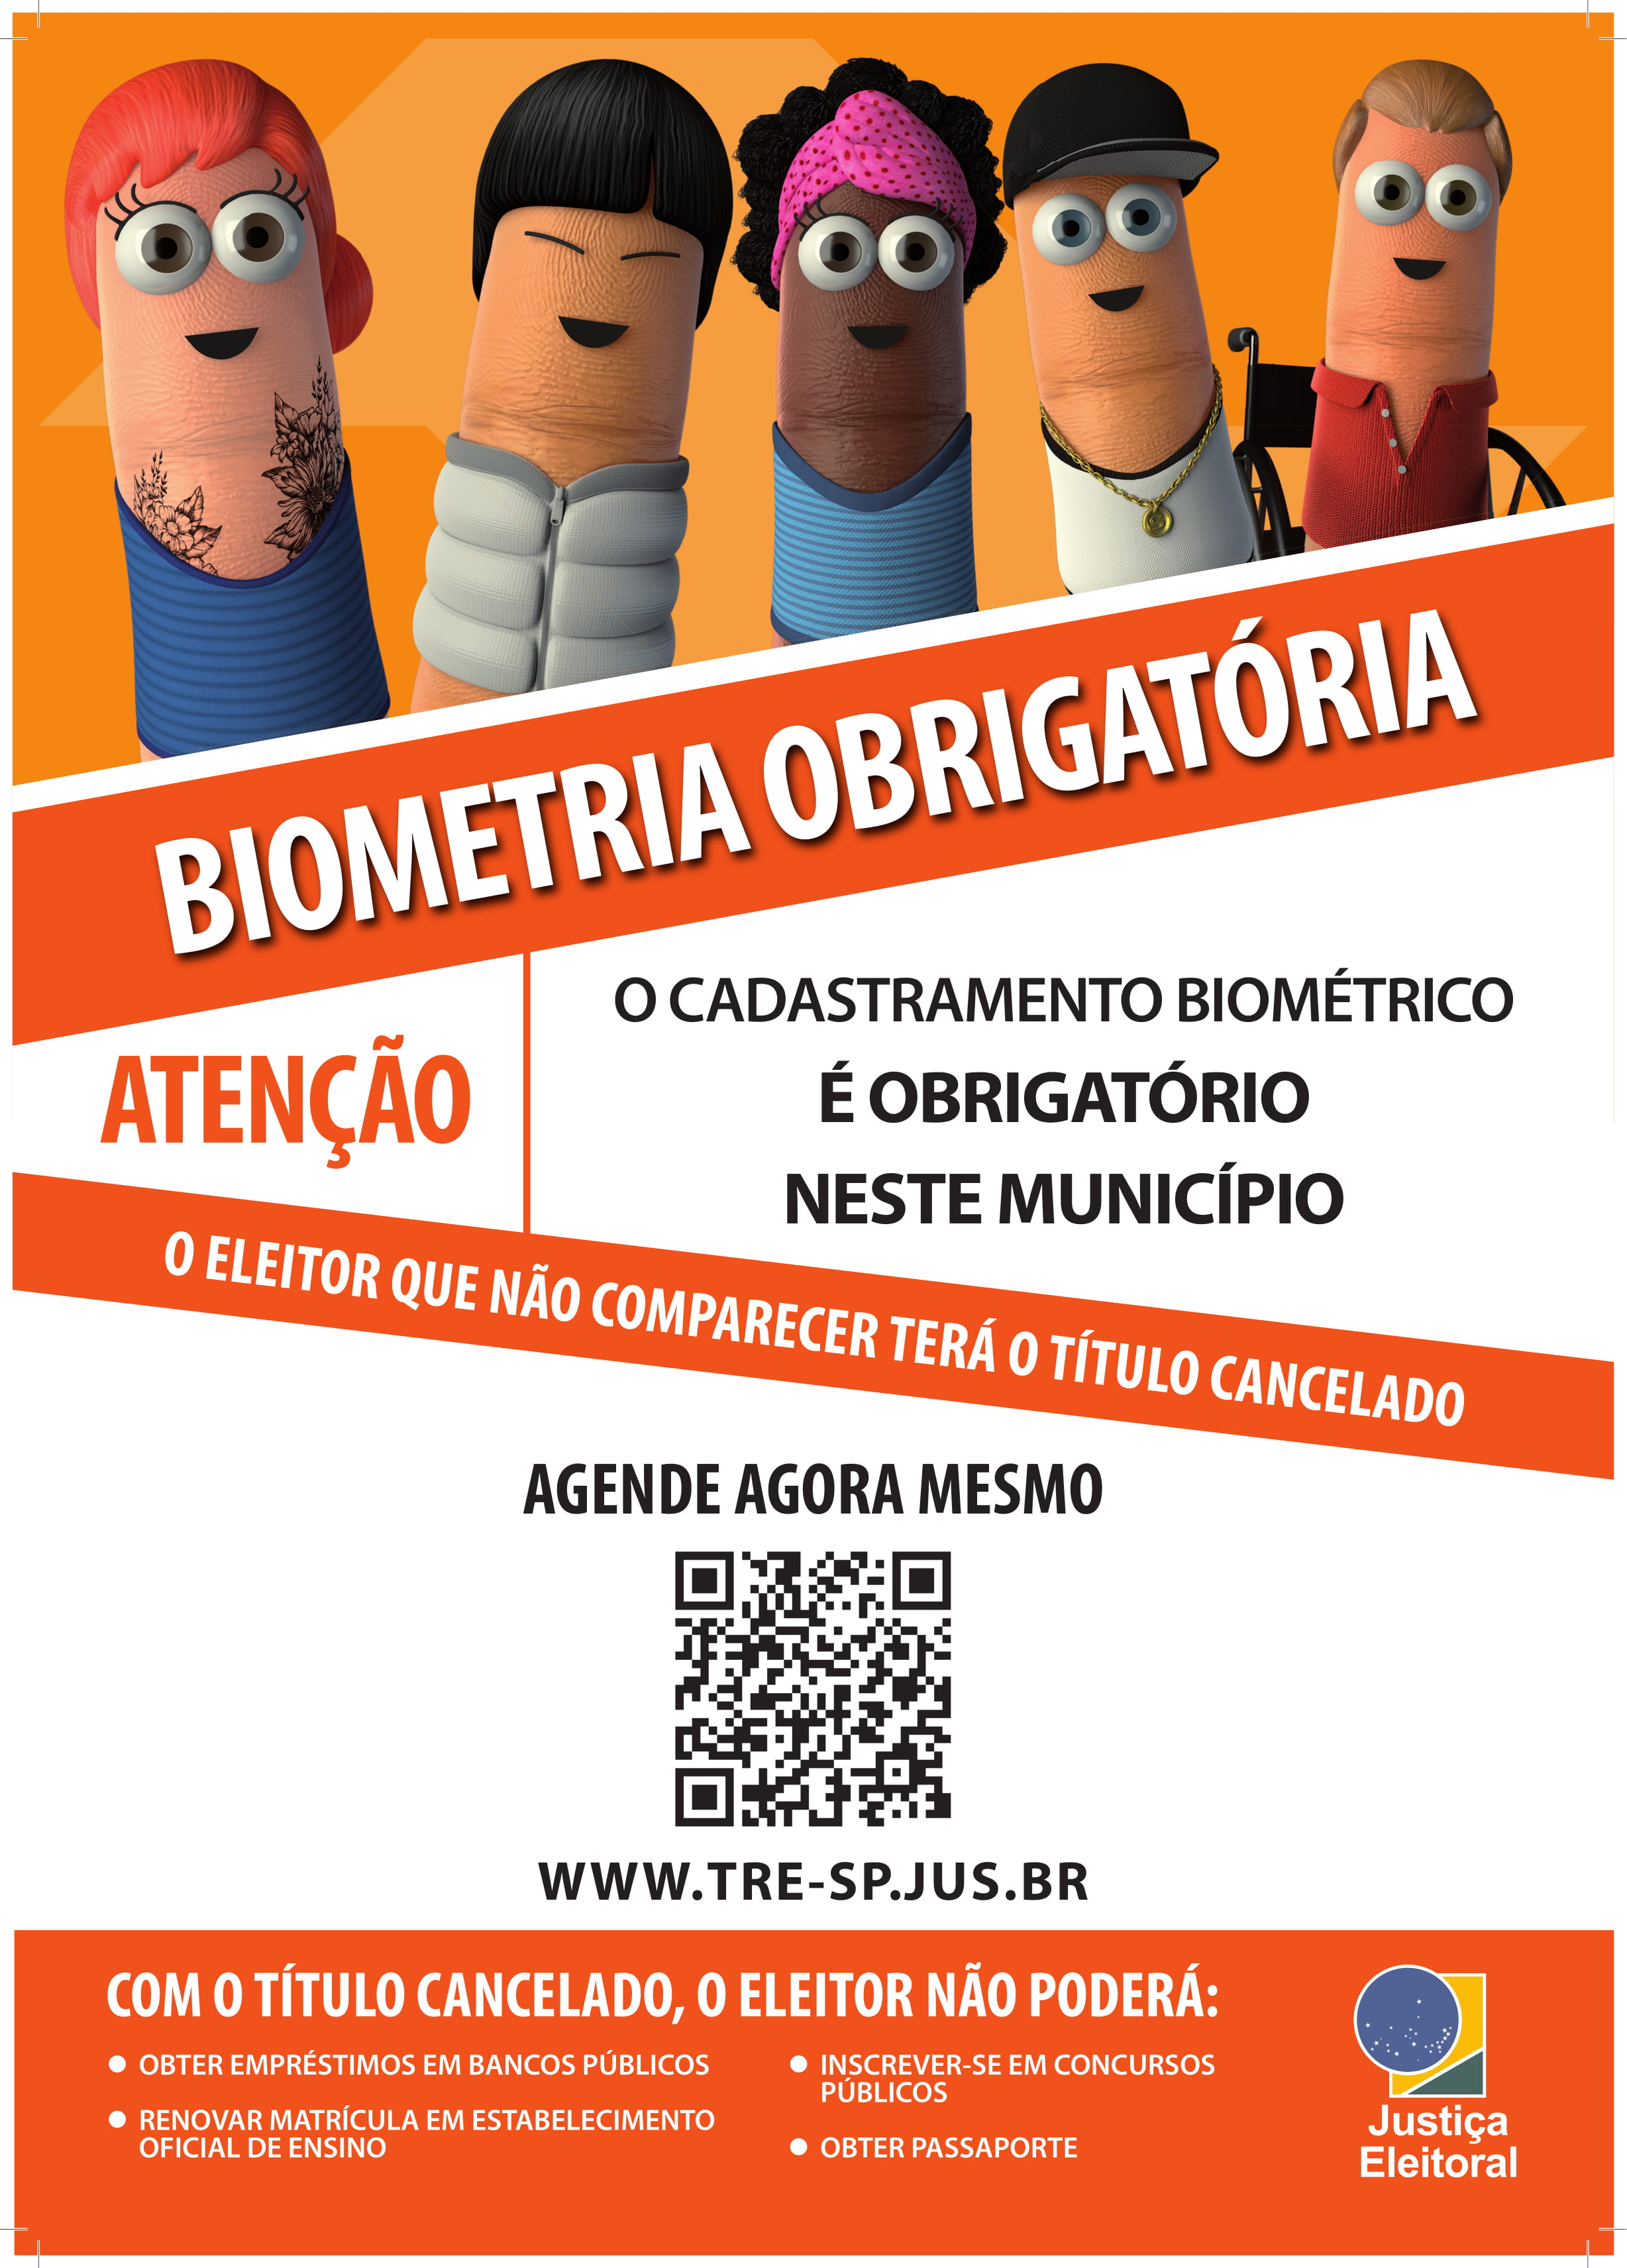 Prazo para cadastramento biométrico em Mirandópolis e Guaraçaí termina em dezembro